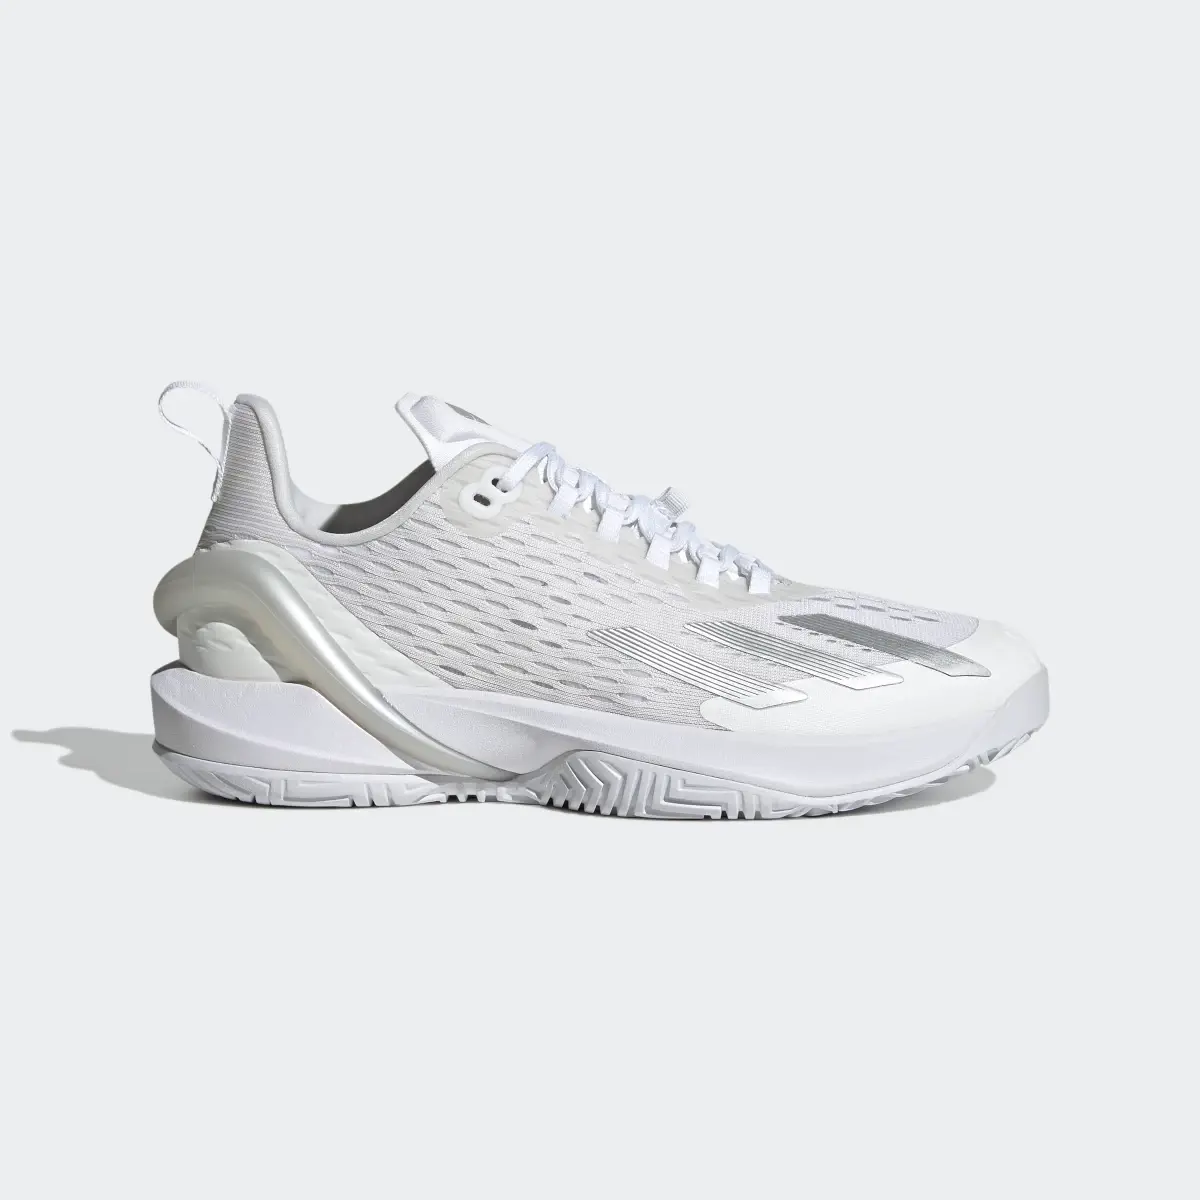 Adidas adizero Cybersonic Tennis Shoes. 2